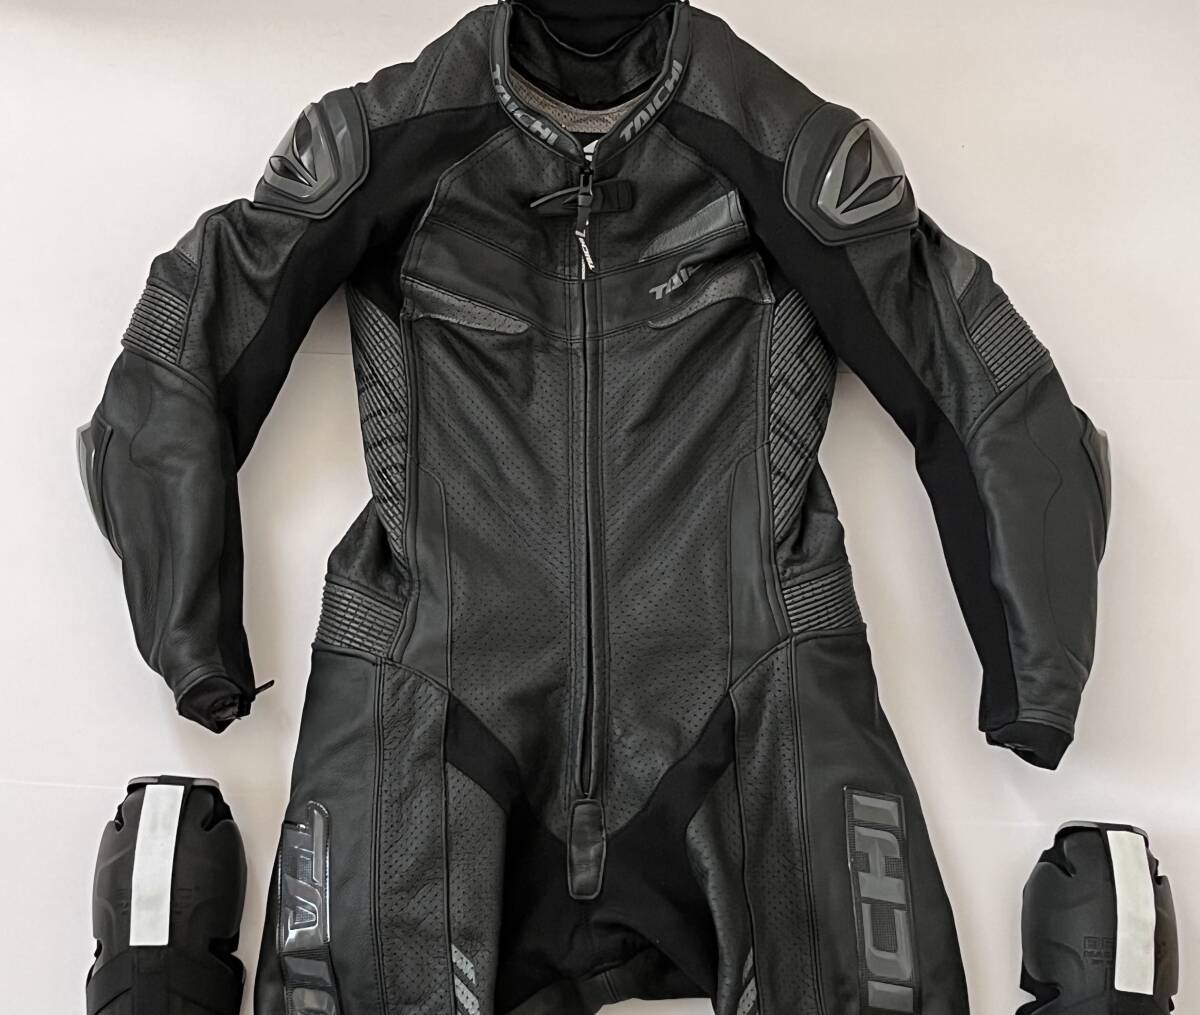 RS TAICHI RS Taichi NXL305 GP-WRX R305 кожа костюм для гонок кожаный комбинезон черный размер LS(M размер соответствует )MFJ легализация прекрасный товар текущее состояние товар 